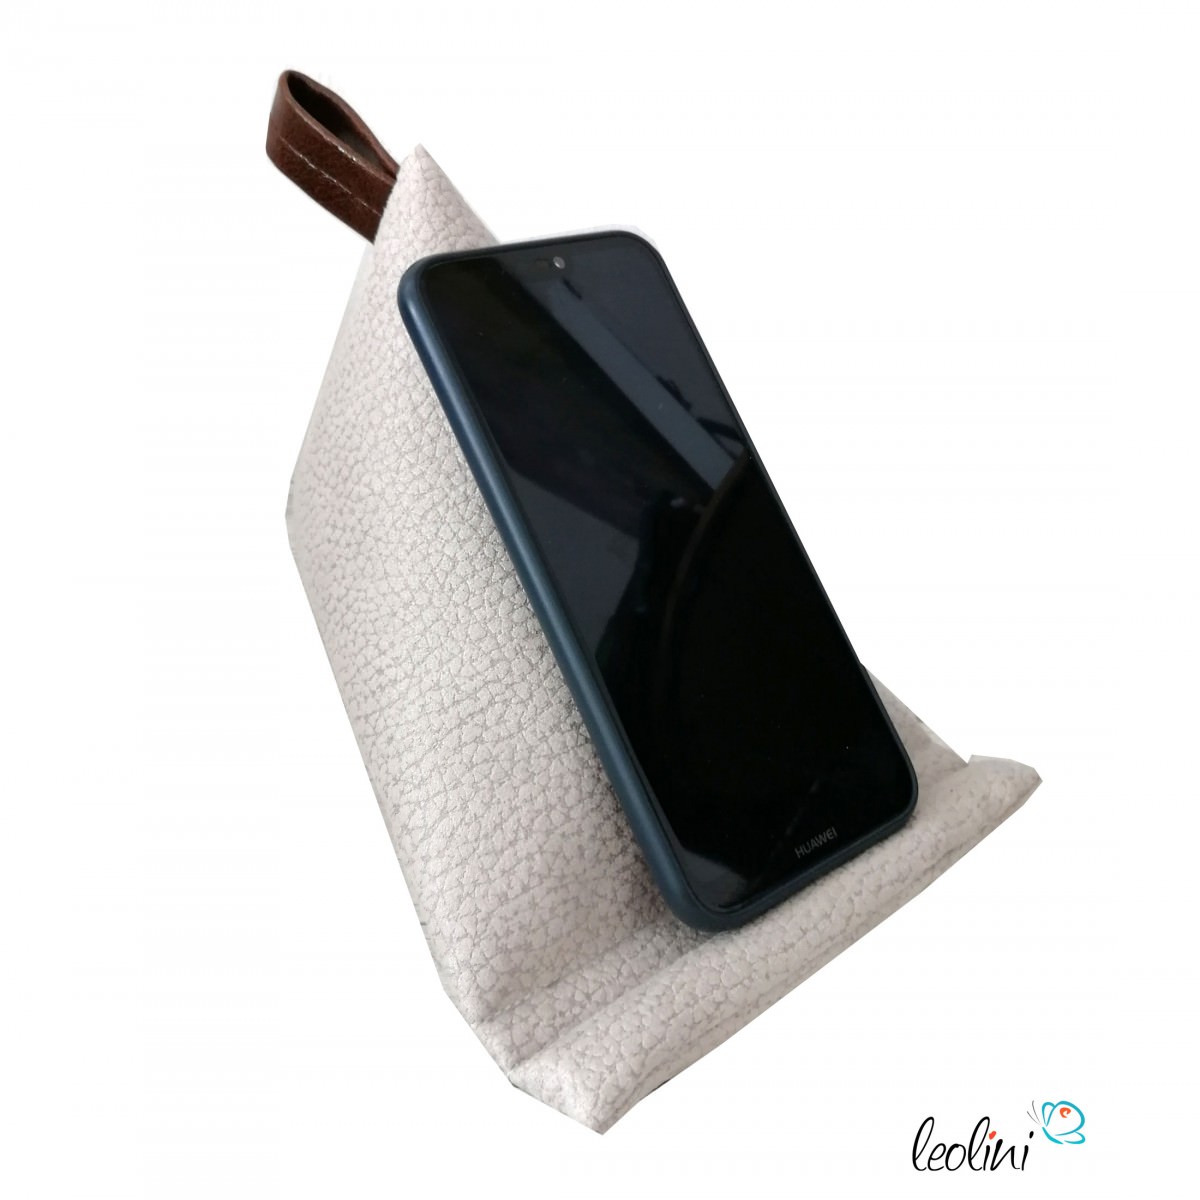 Handysitzsack DELUXE | Wildlederimitat creme | Stützkissen für Smartphone und Tablet